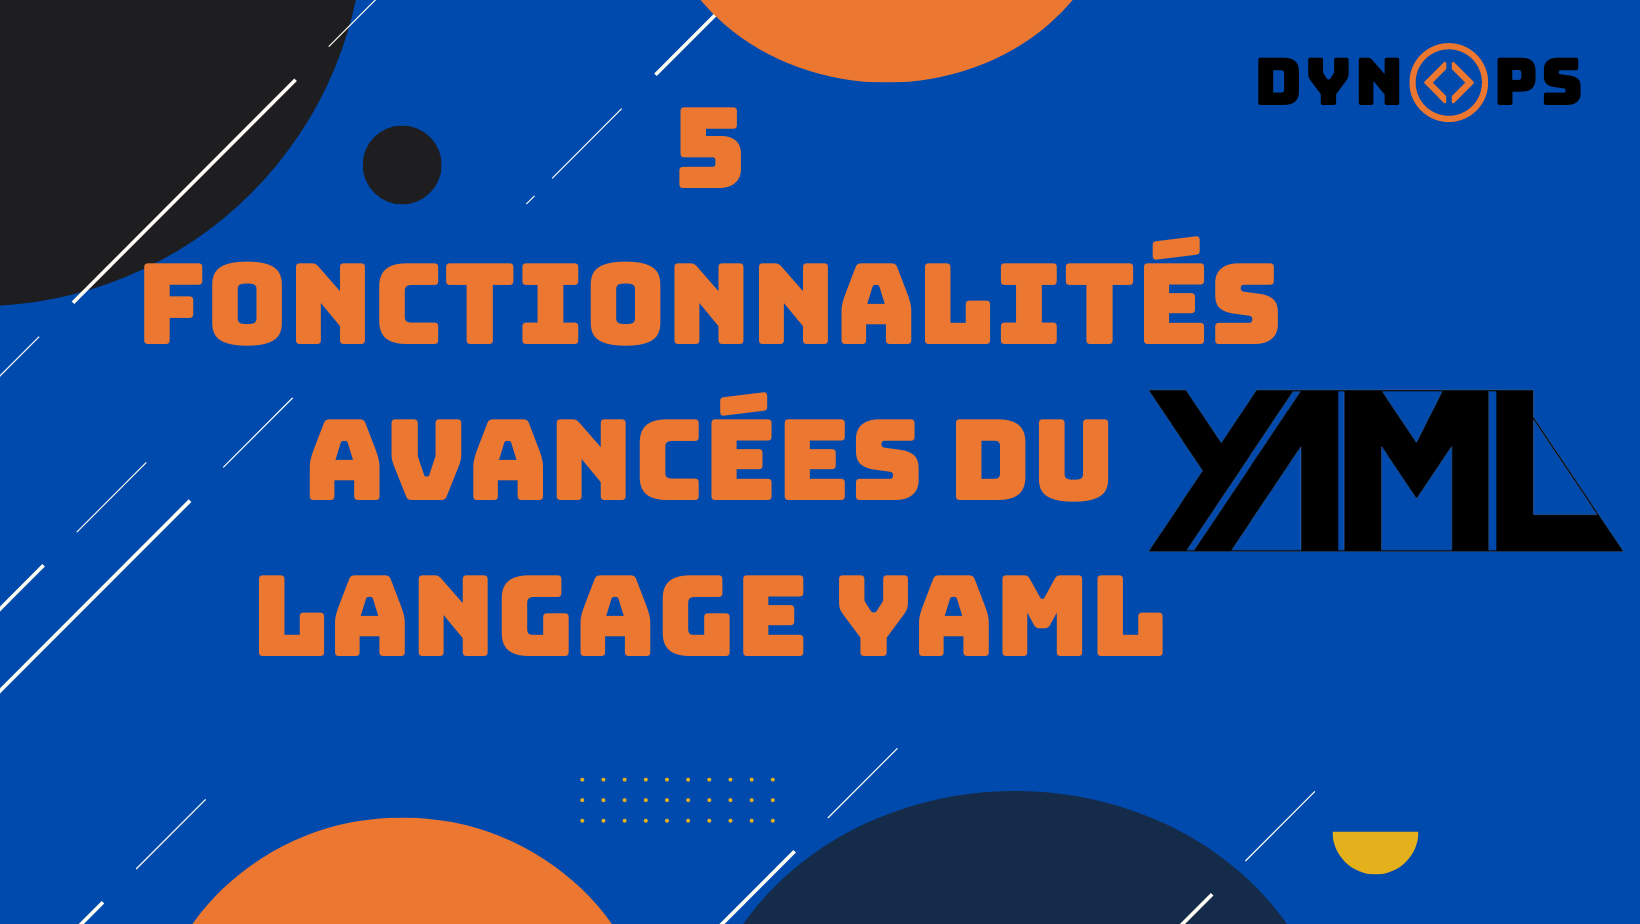 5 Fonctionnalités avancées du langage YAML